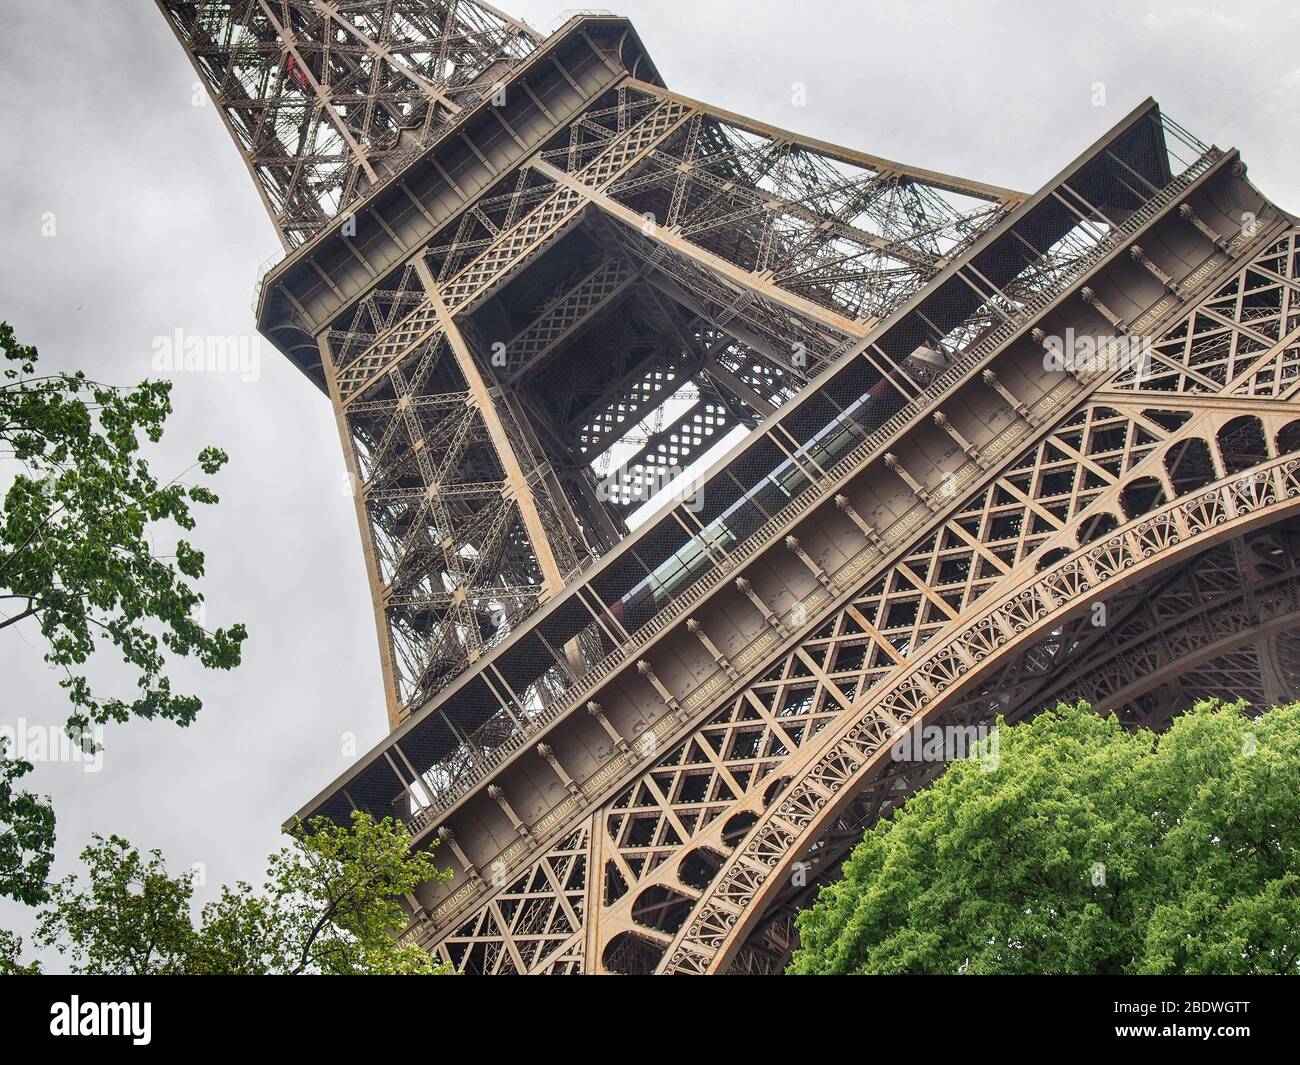 Eiffel Tower arch close up view, diagonal composition, Paris, France Stock Photo